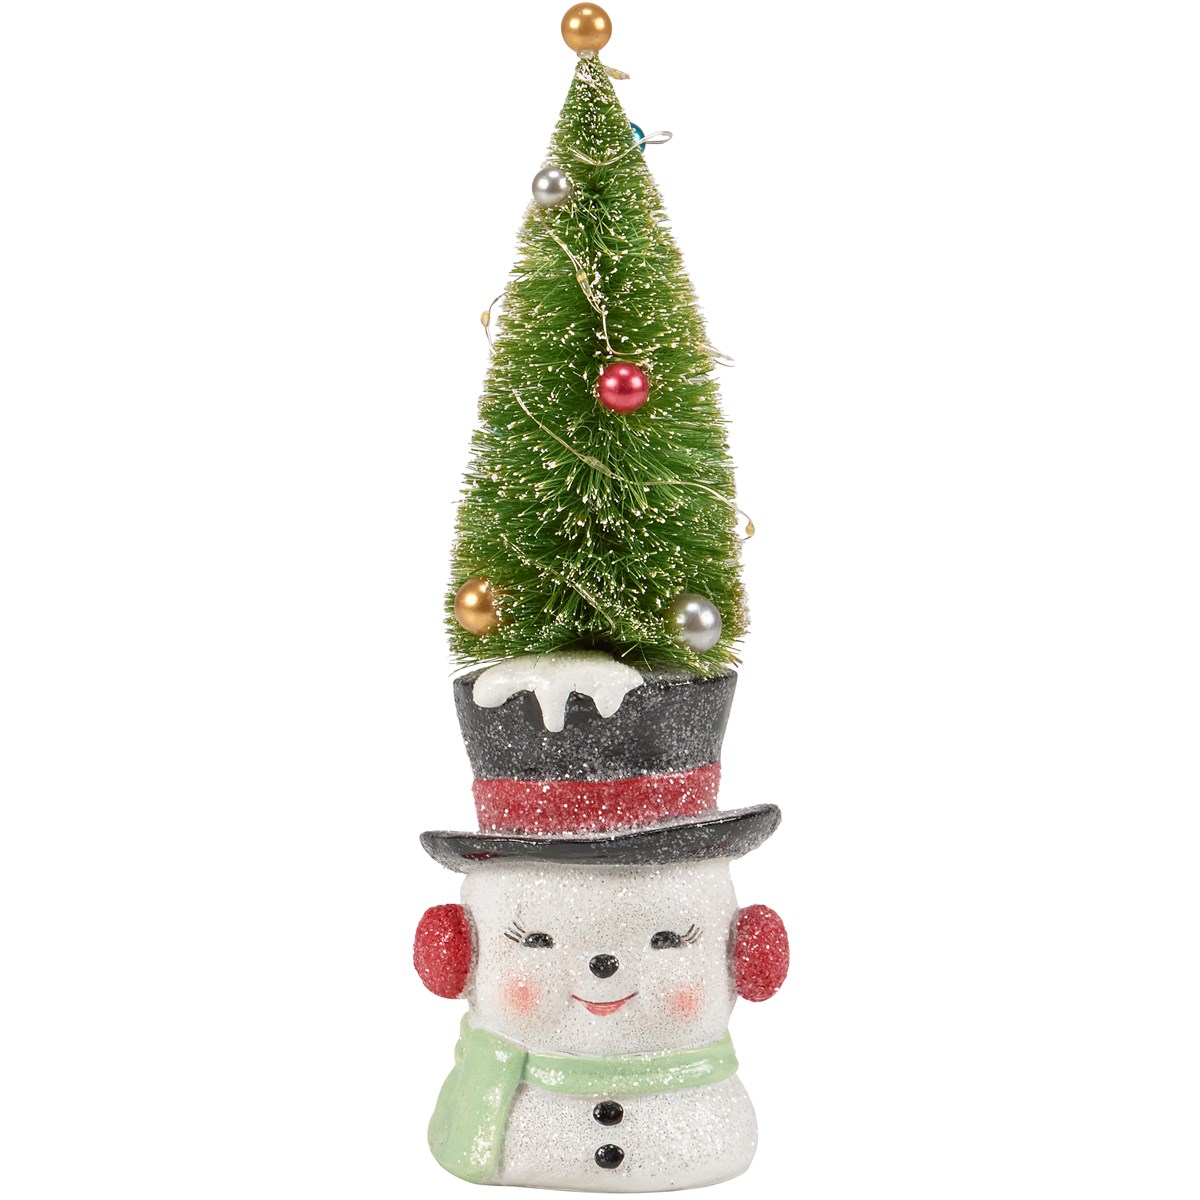 Lighted Snowman Tree Figurine - Resin, Plastic, Lights, Glitter